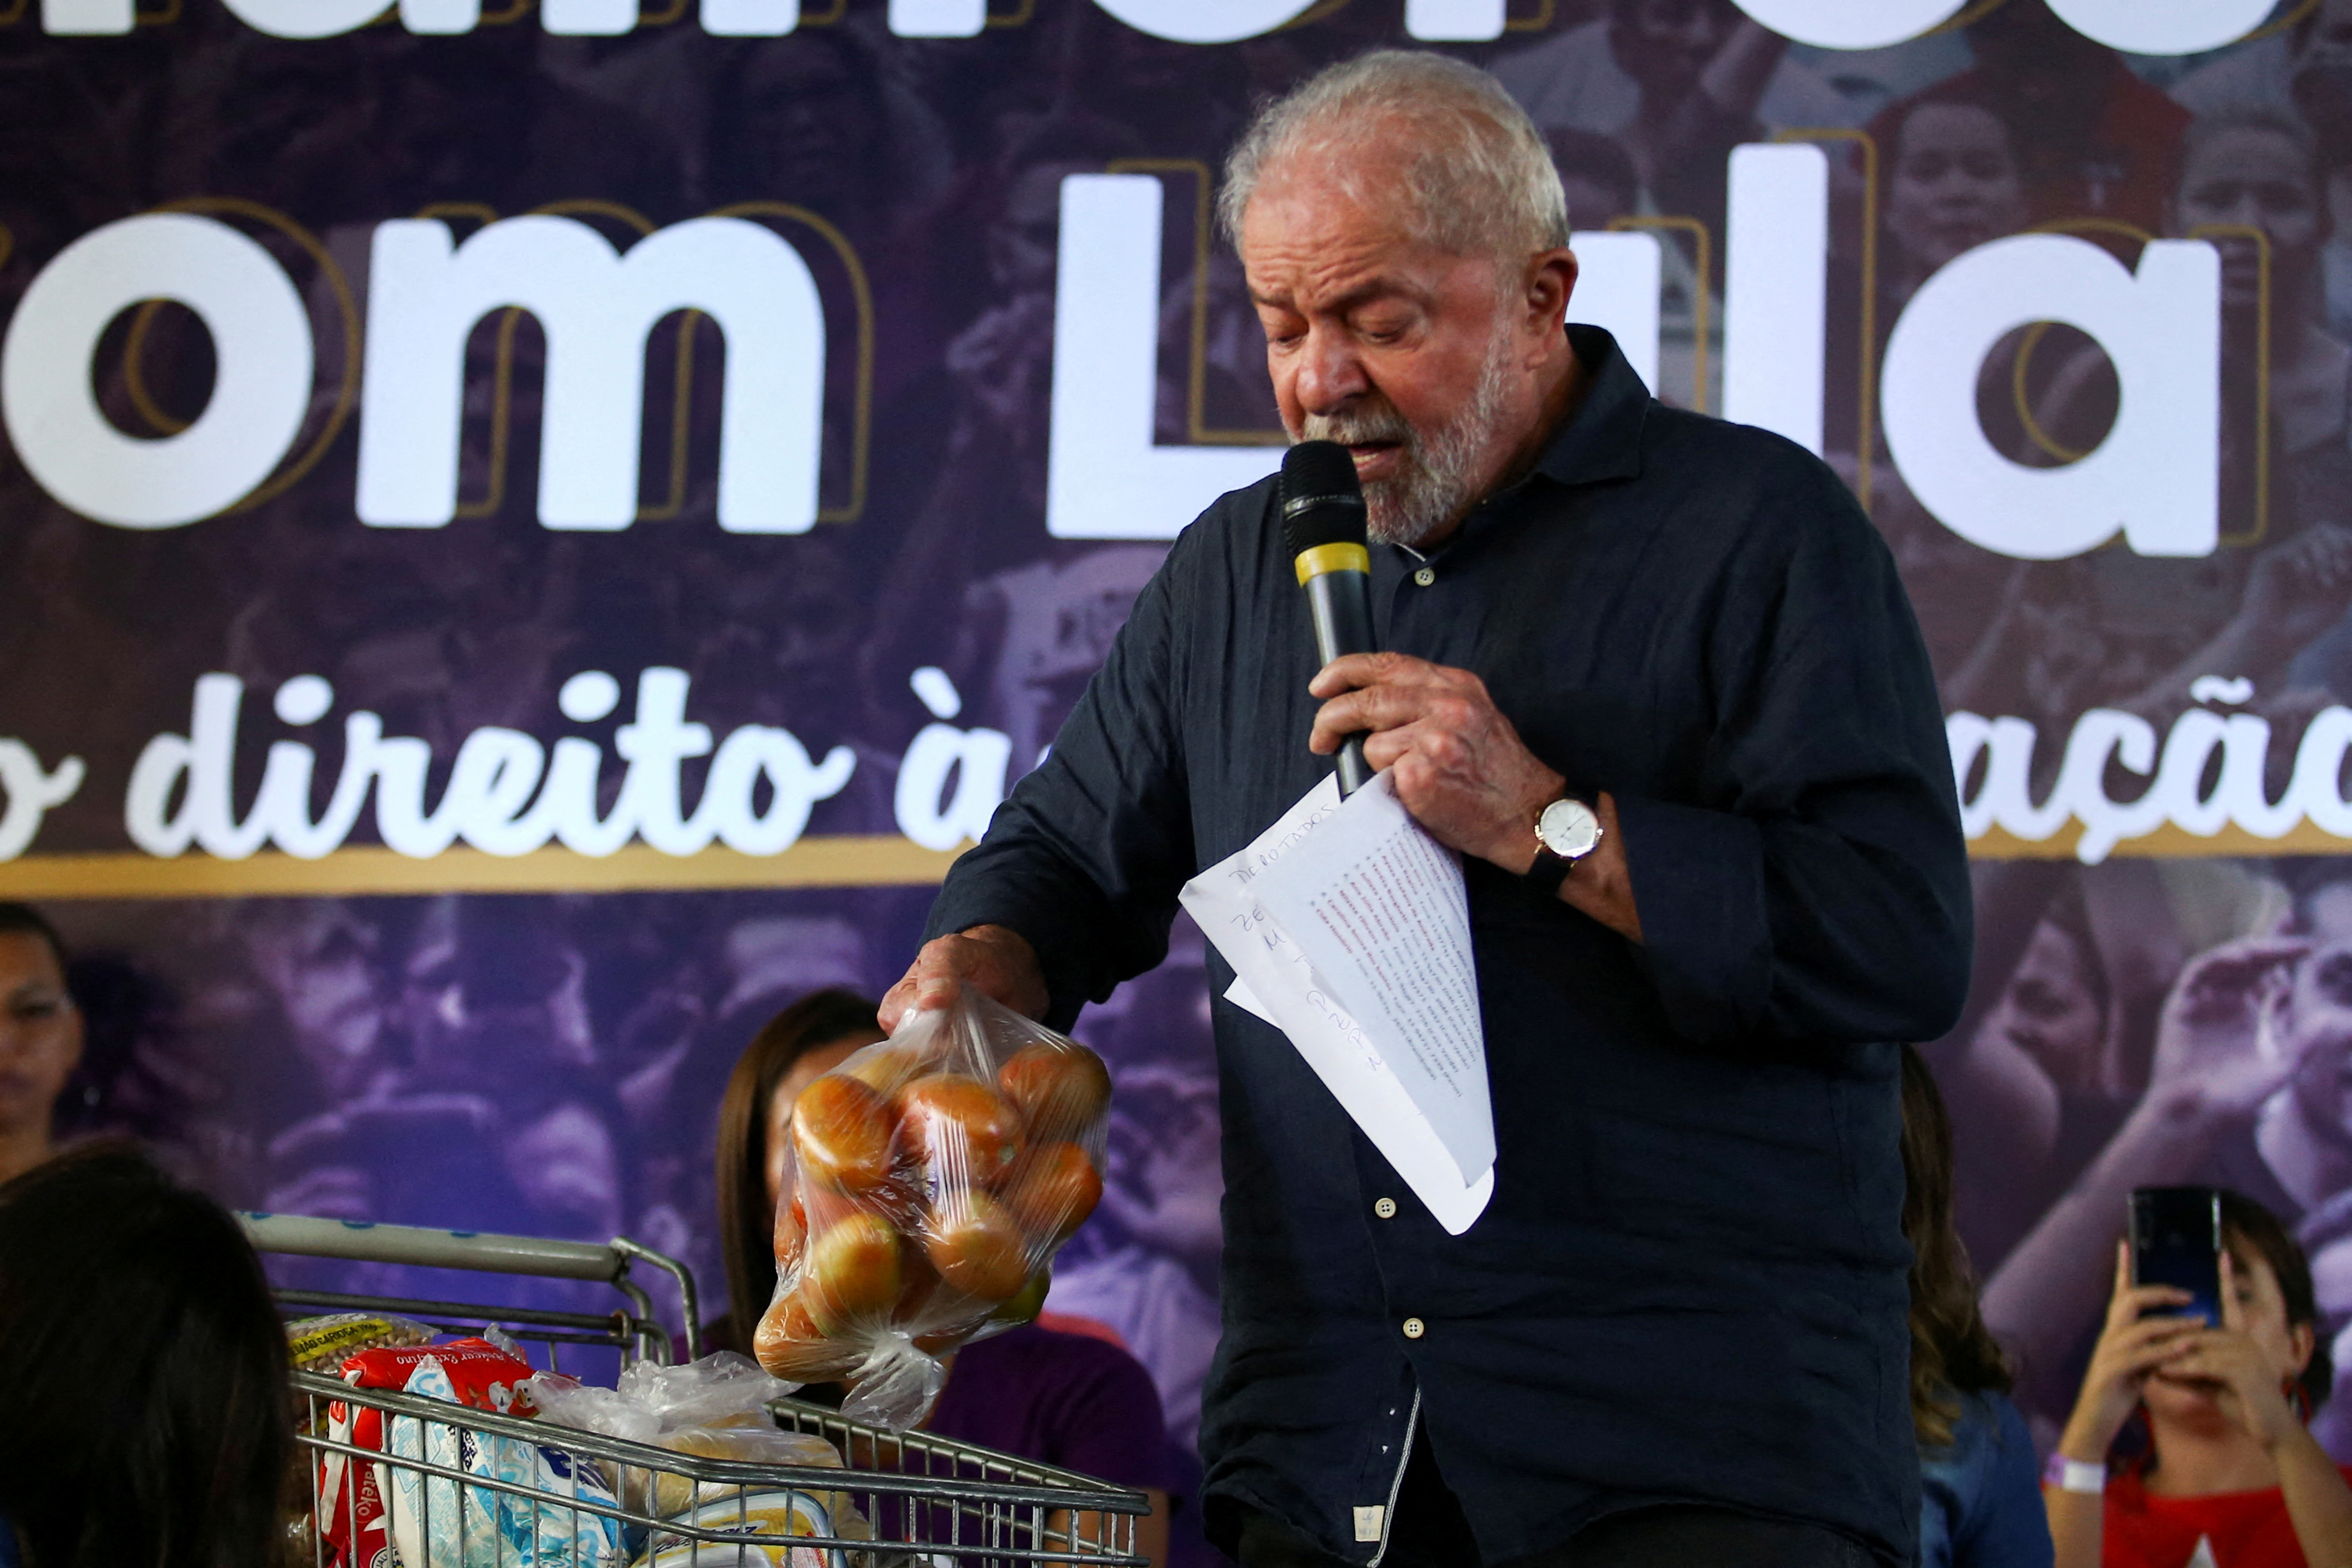 Former Brazil President Luiz Inacio Lula da Silva attends an event in Sao Paulo